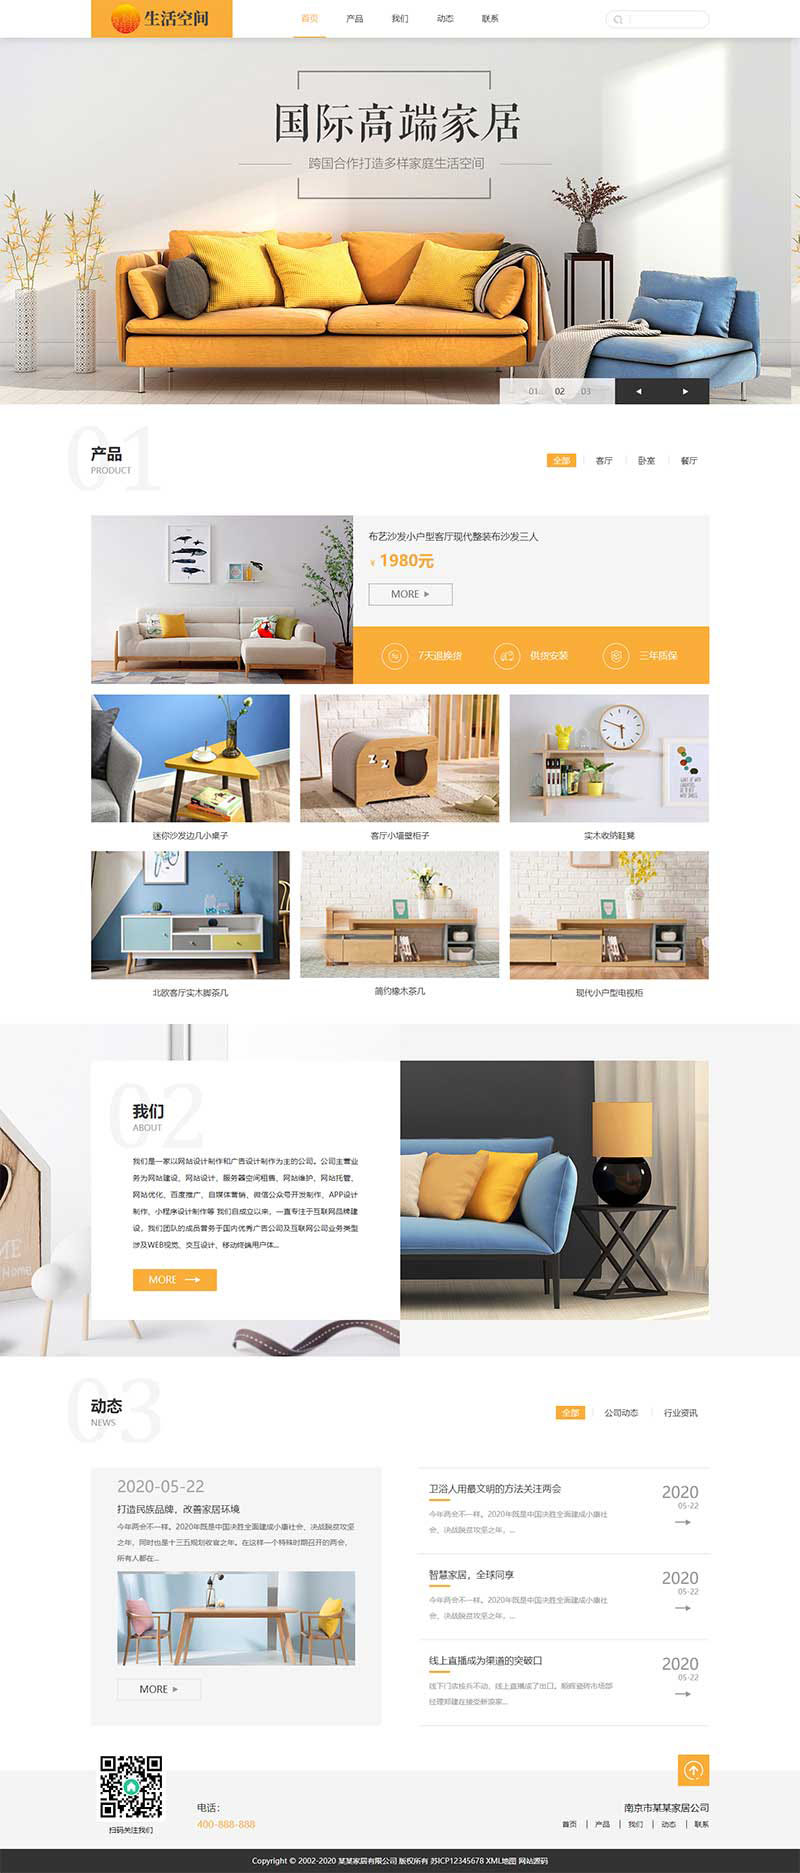 (自适应移动端)html5响应式黄色风格精美家具家居公司网站电脑端模板展示图片